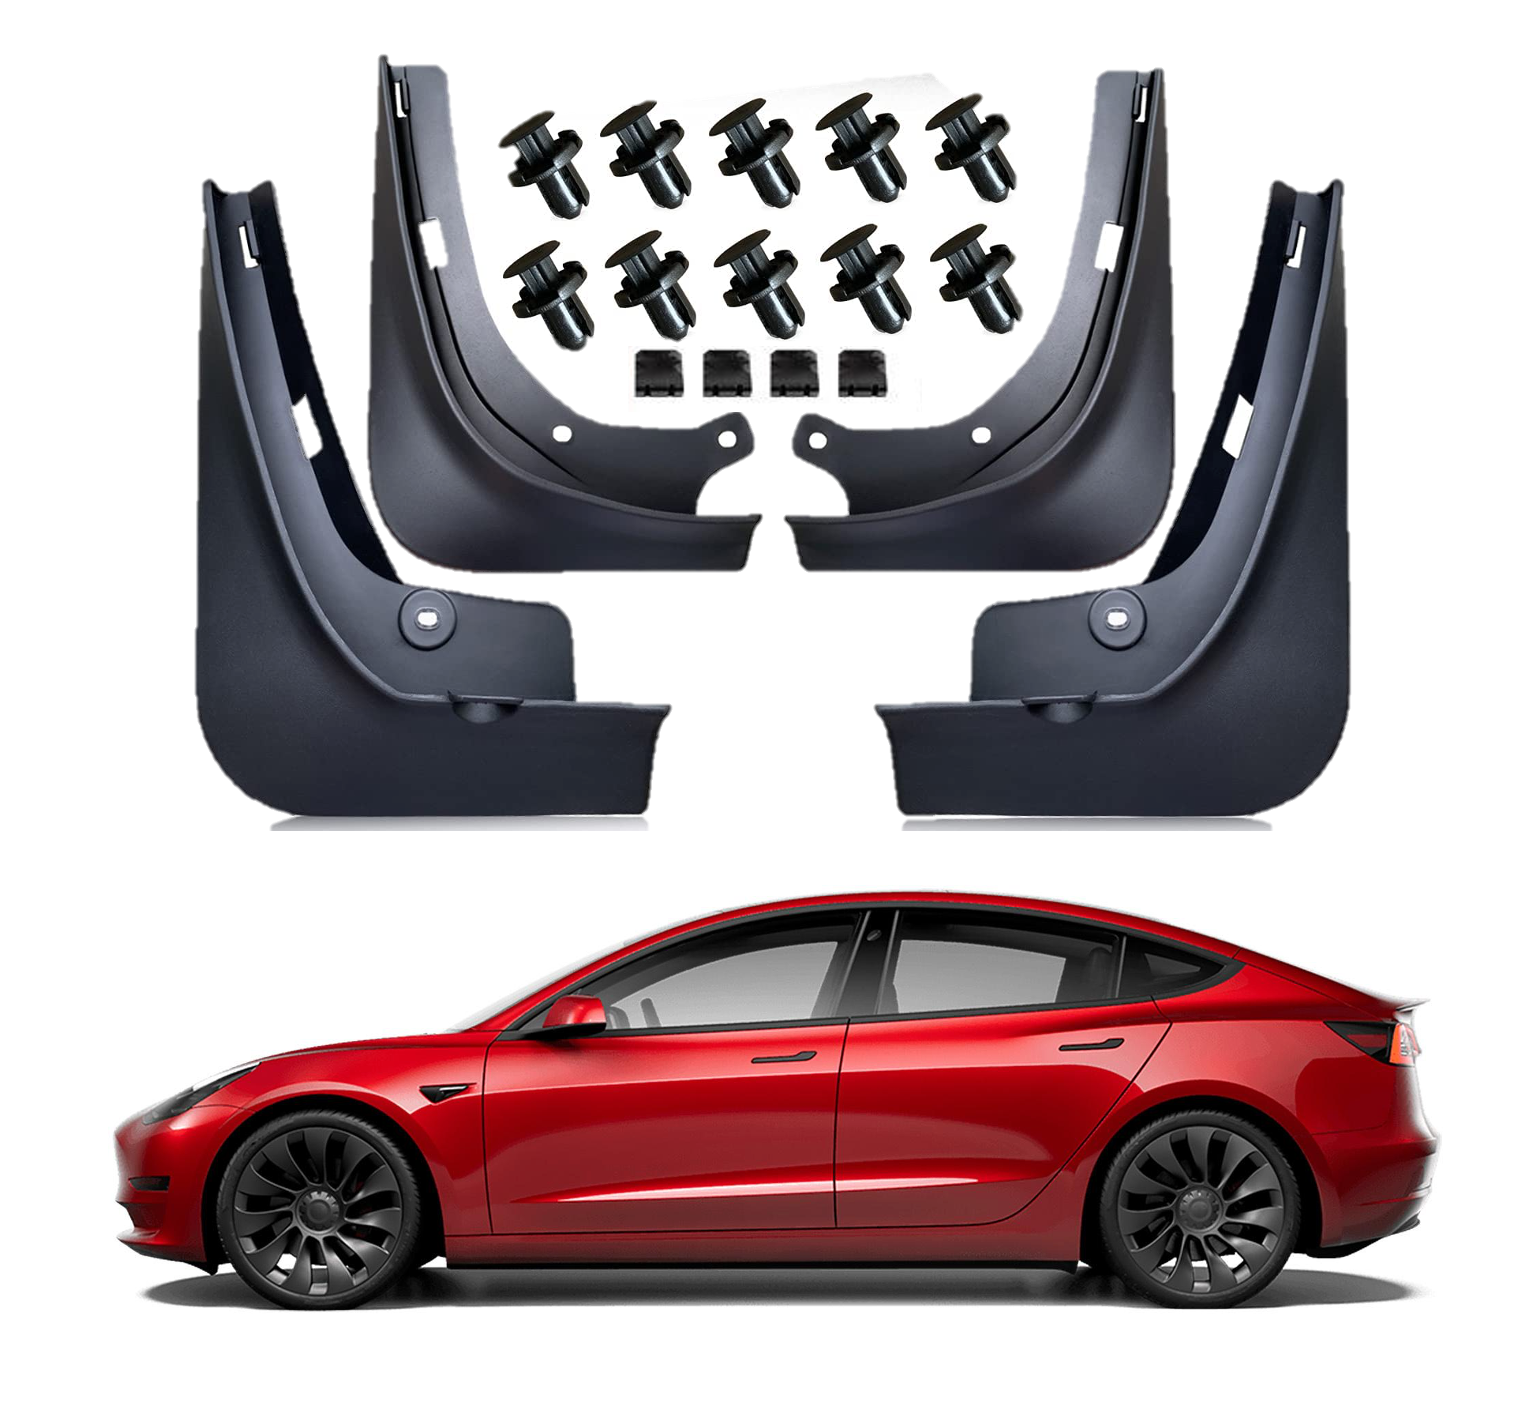 Tesla Model 3: Problème de peinture? La solution: Garde-boues / Mud Flaps  et Wrap! 